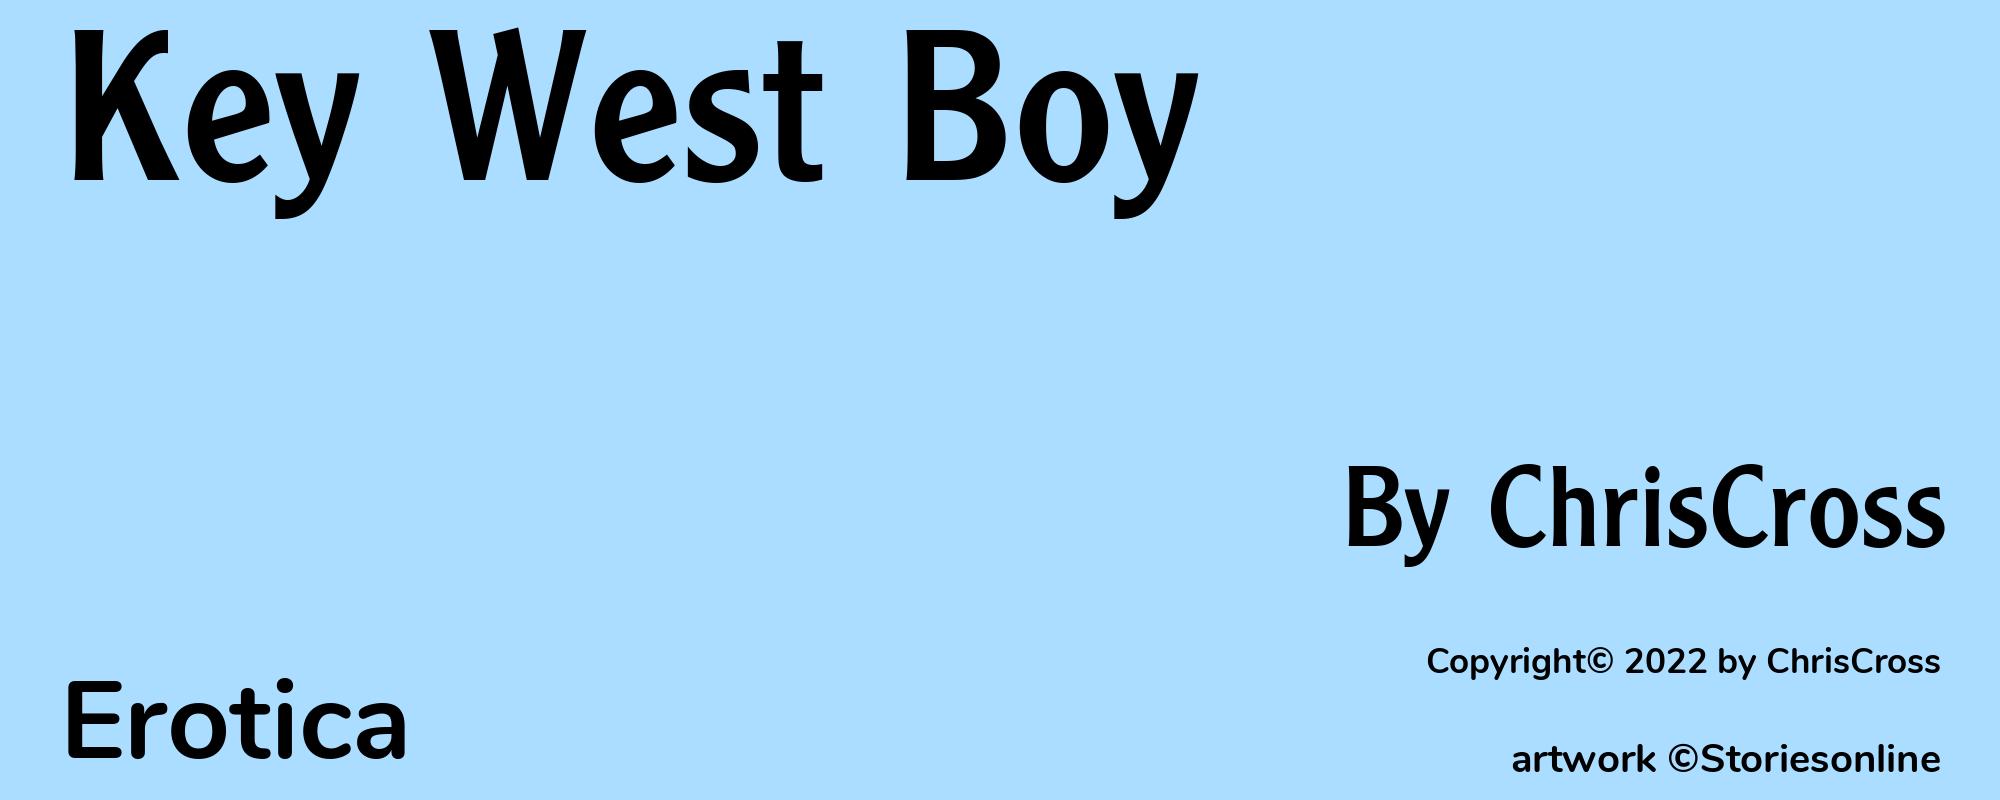 Key West Boy - Cover